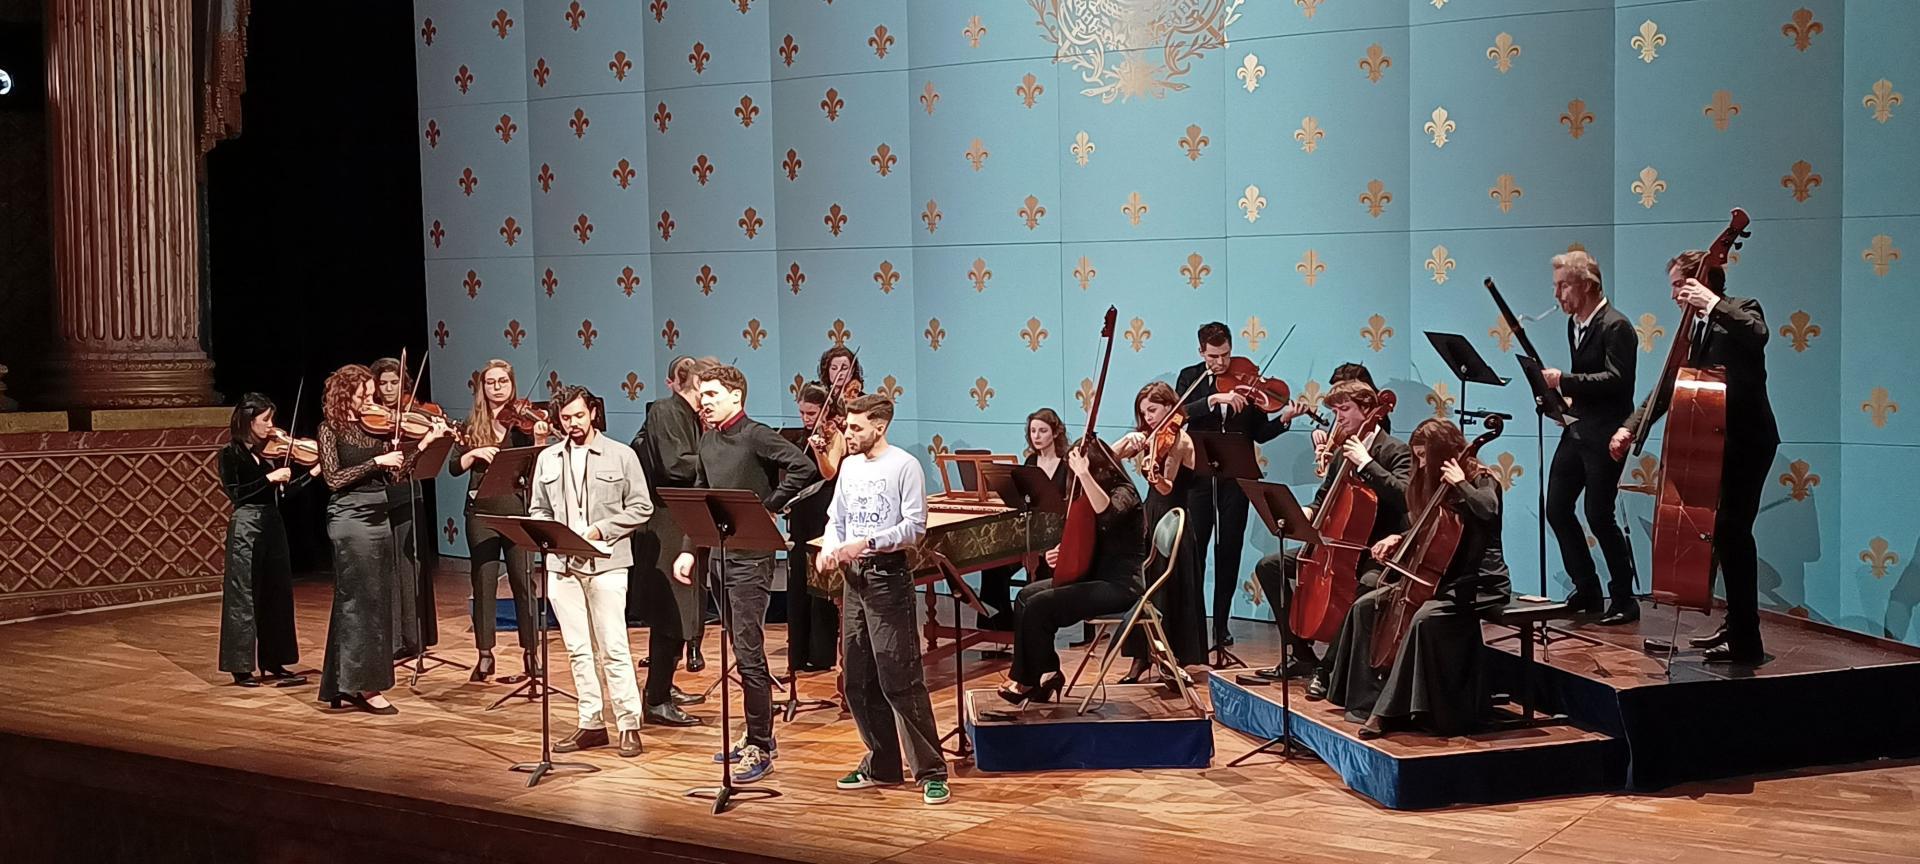 Bruno de Sá, Nicolò Balducci, Théo Imart e Orchestre de l'Opéra Royal durante la prova (foto di P. Scarnecchia)